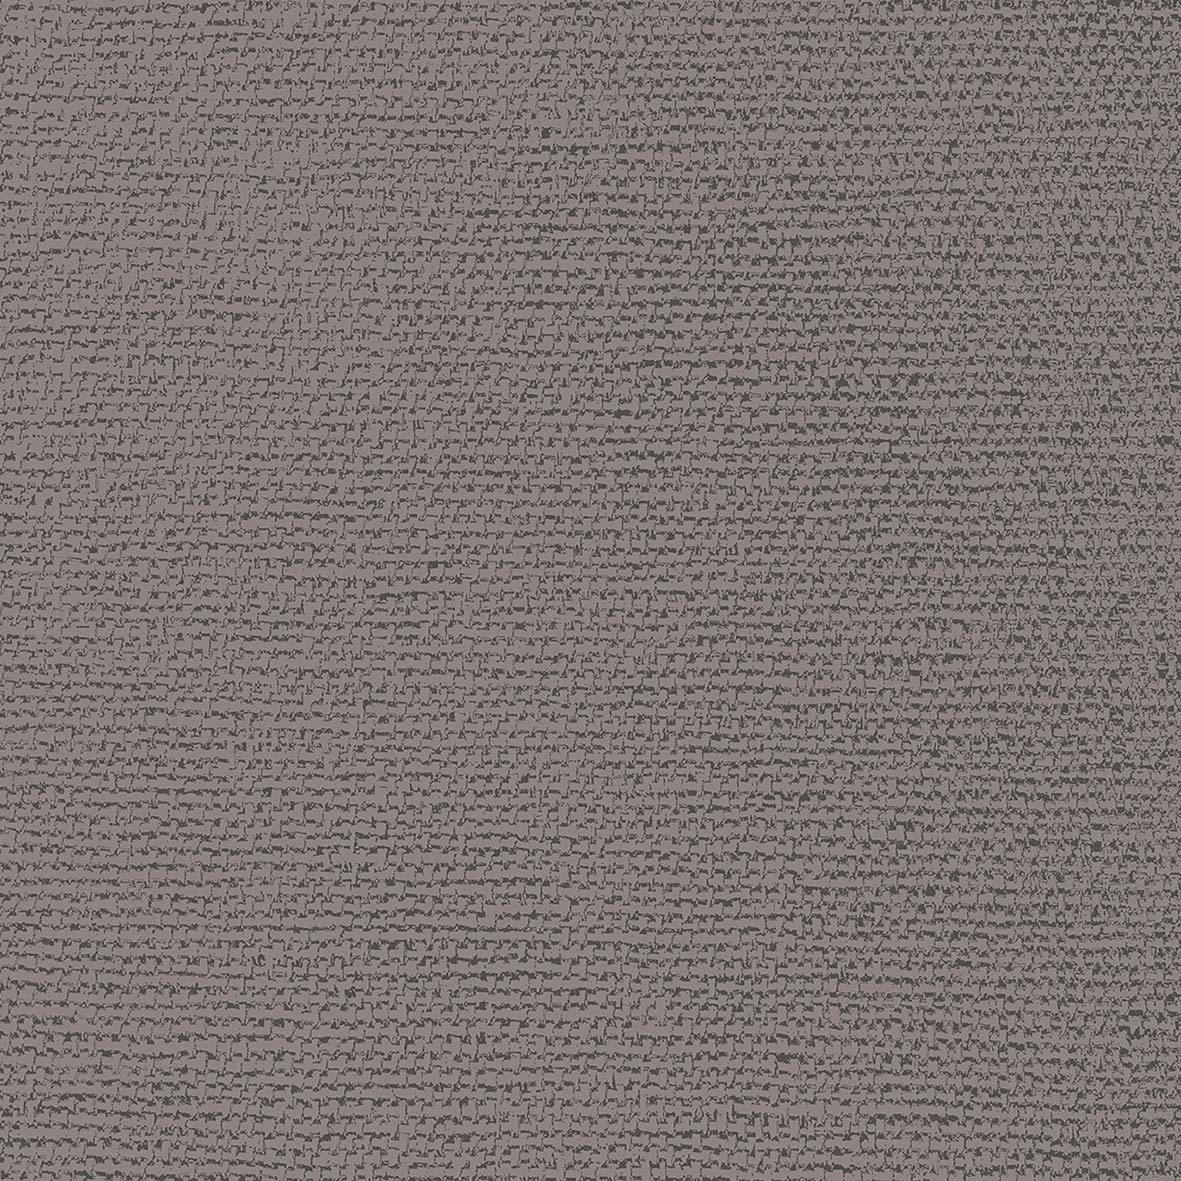 Canvas gray Napkin 25x25